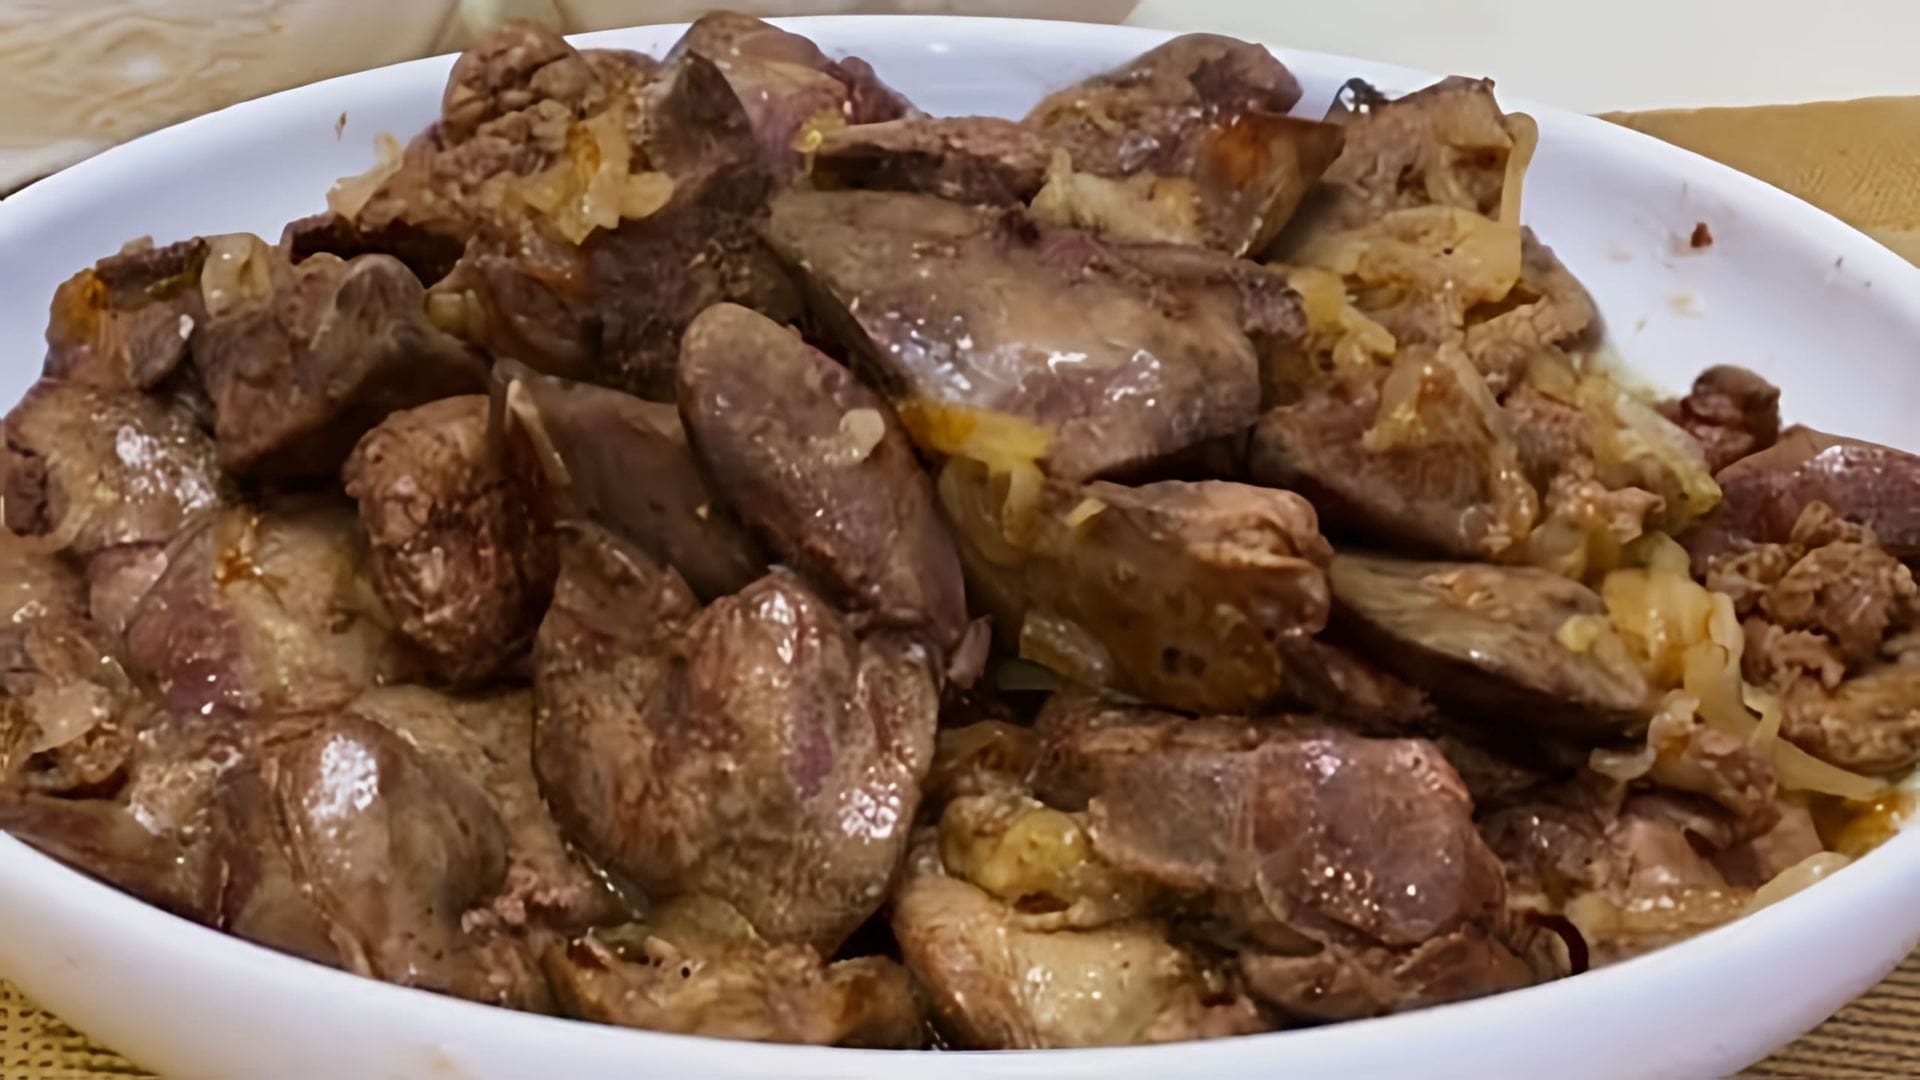 Видео рецепт жареной куриной печени с луком, который создатель называет очень вкусным и сытным блюдом